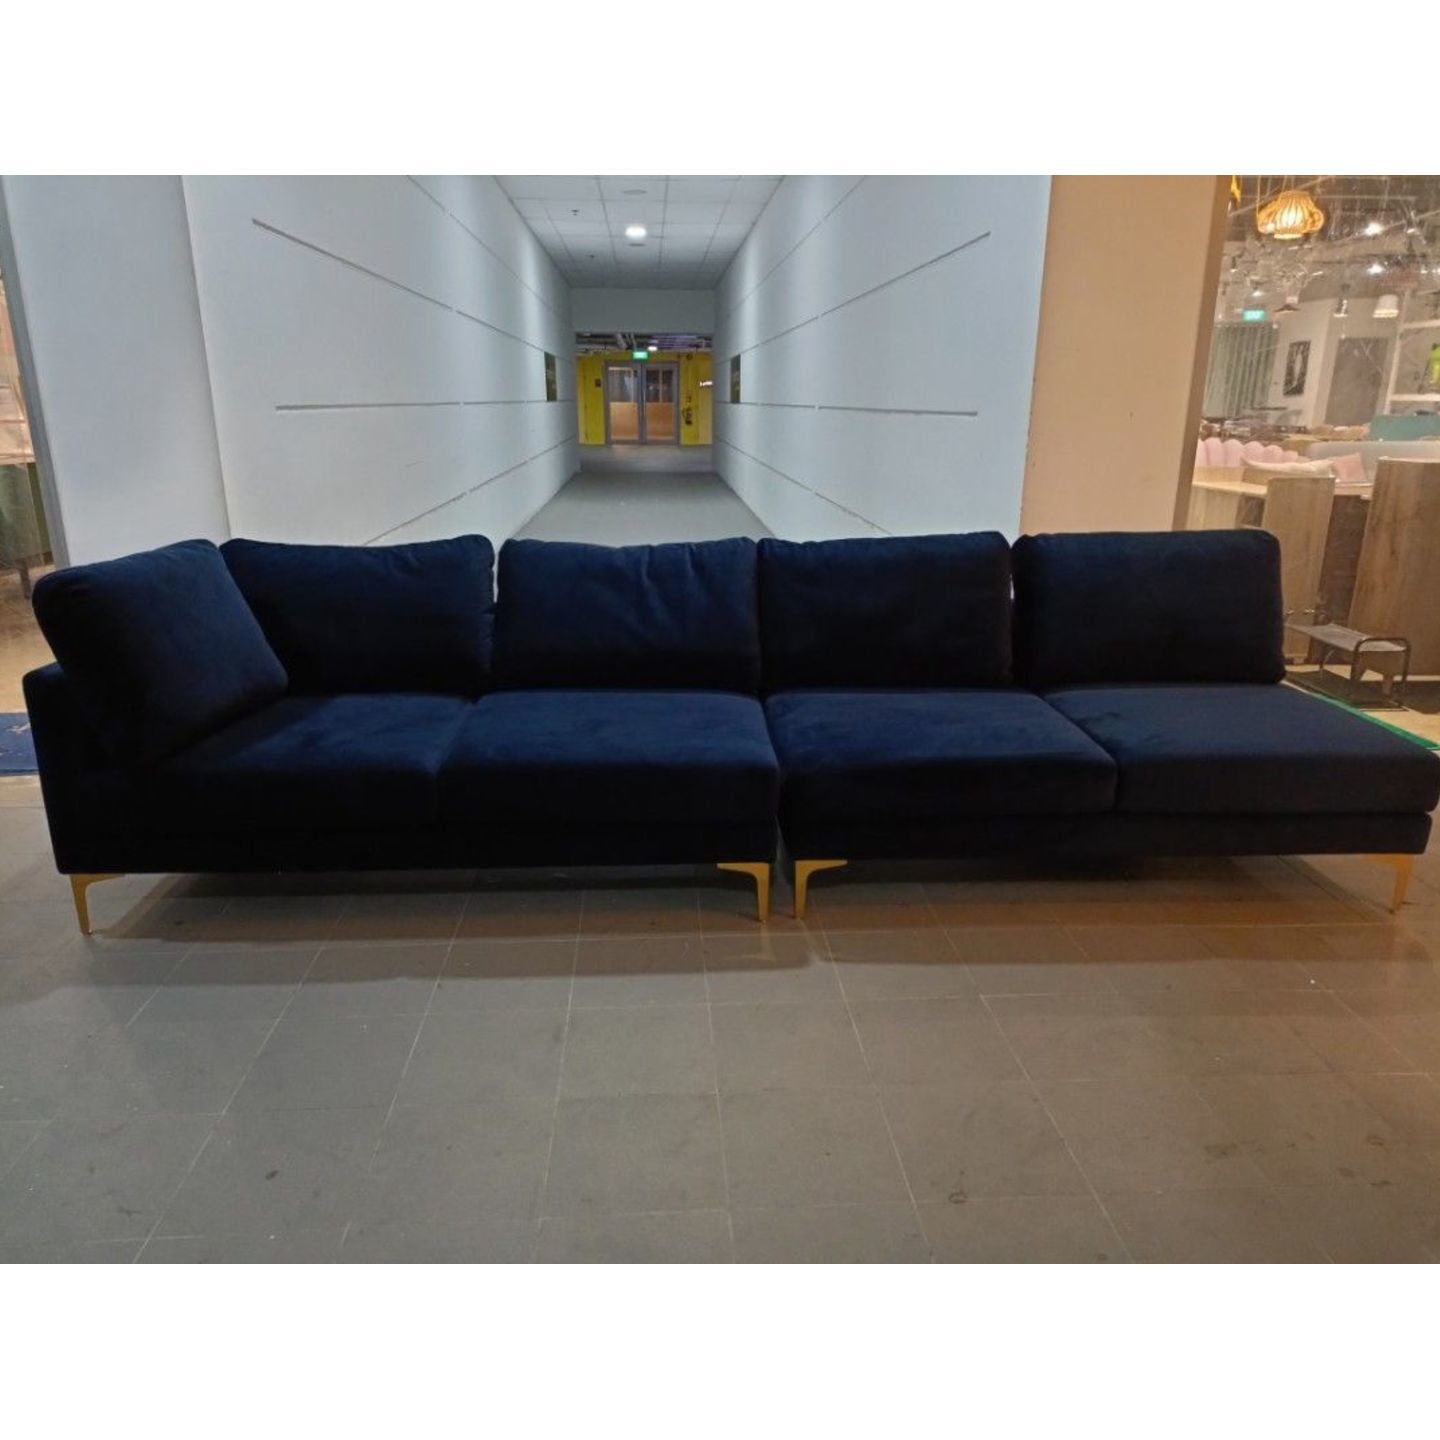 LAMBERT 4 Seater Sectional Sofa in MIDNIGHT VELVET BLUE